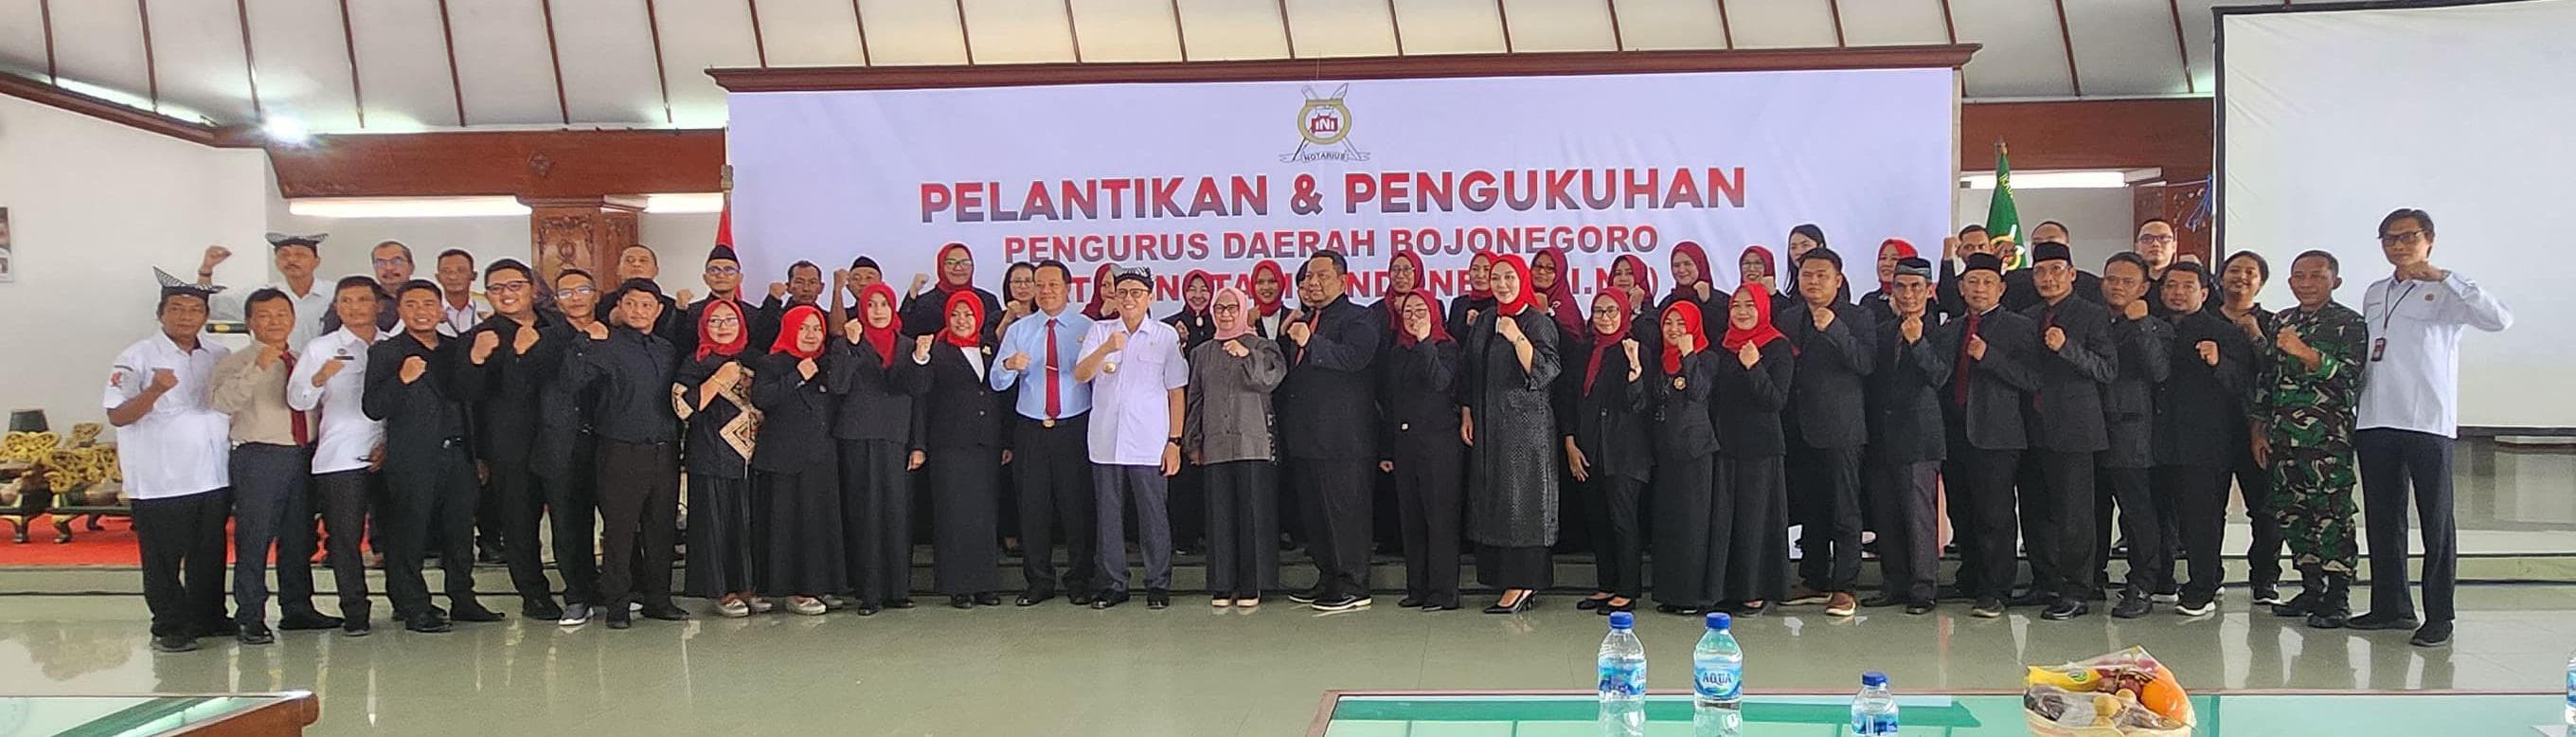 Resmi Dilantik Pengda Bojonegoro, Ikatan Notaris Indonesia Siap Bersinergi dengan Pemkab